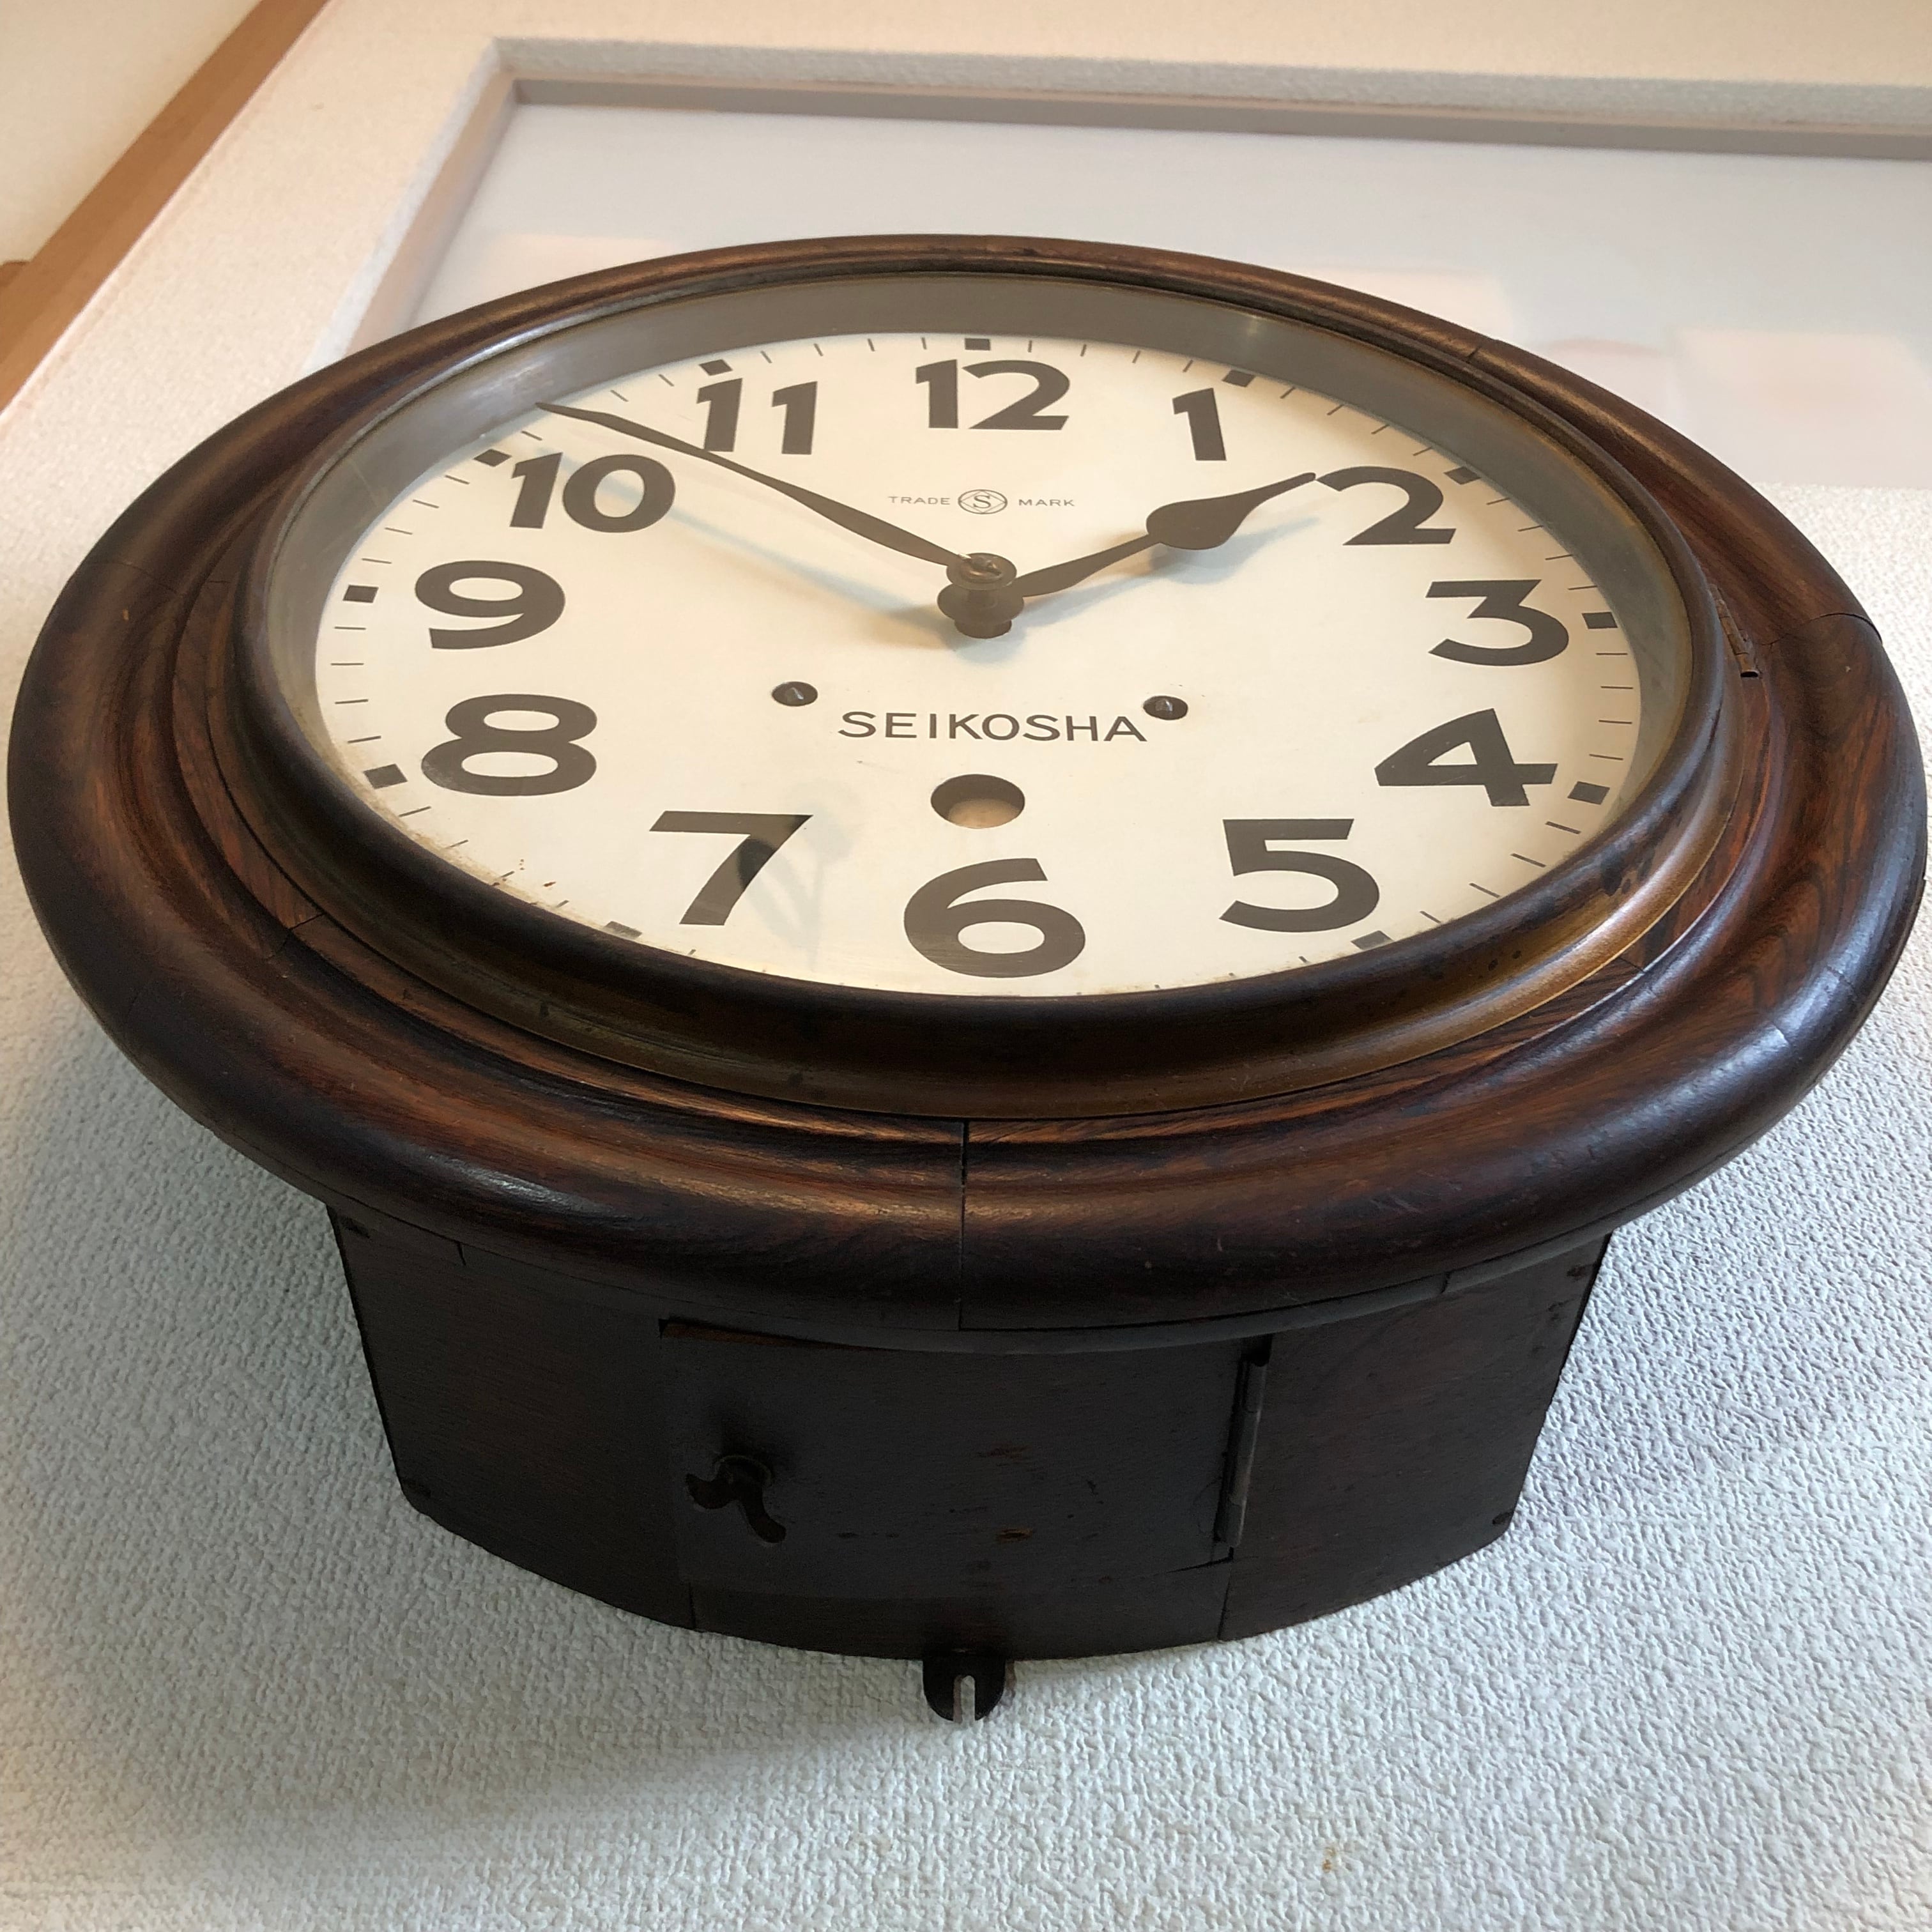 新しいスタイル 精工舎 丸型 直径41cm 振り子時計 古時計 掛時計 欅